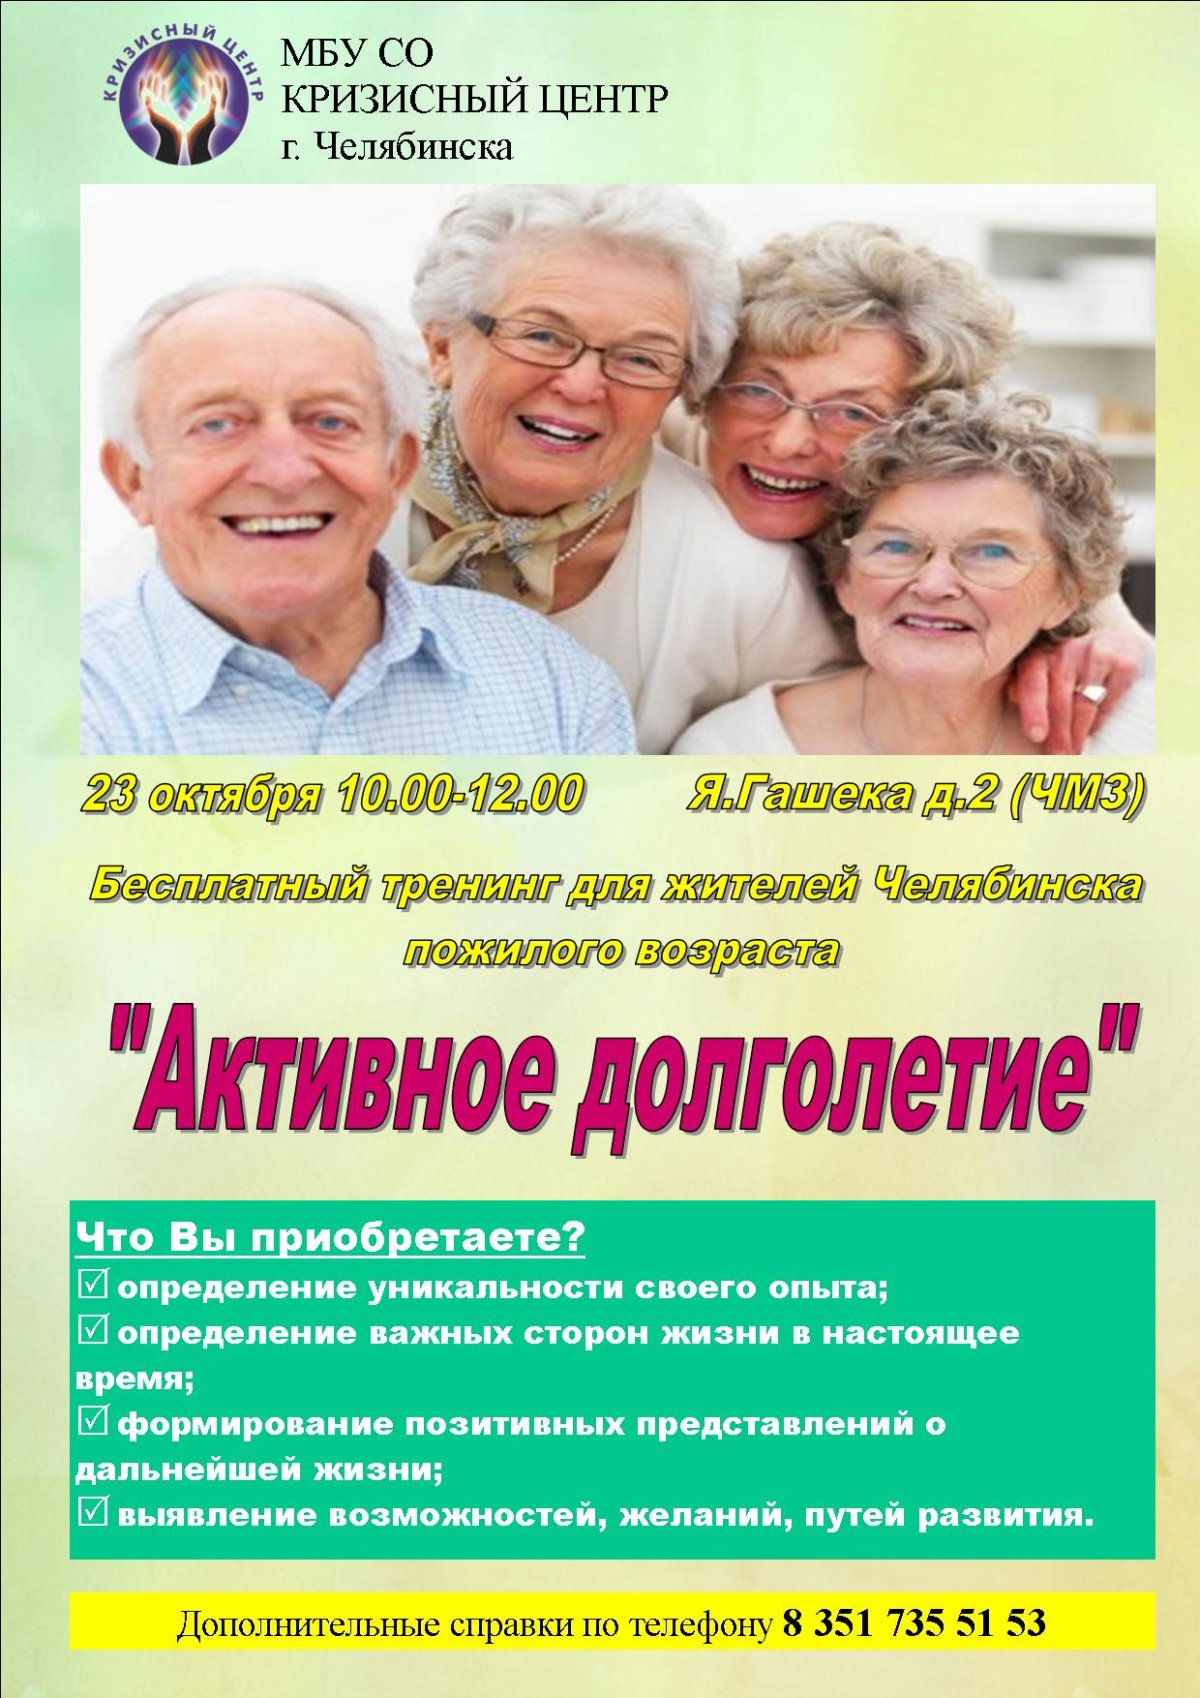 План активное долголетие. Активное долголетие программа. Реклама ко Дню пожилых людей. Приглашение на активное долголетие. Приглашаем в активное долголетие.